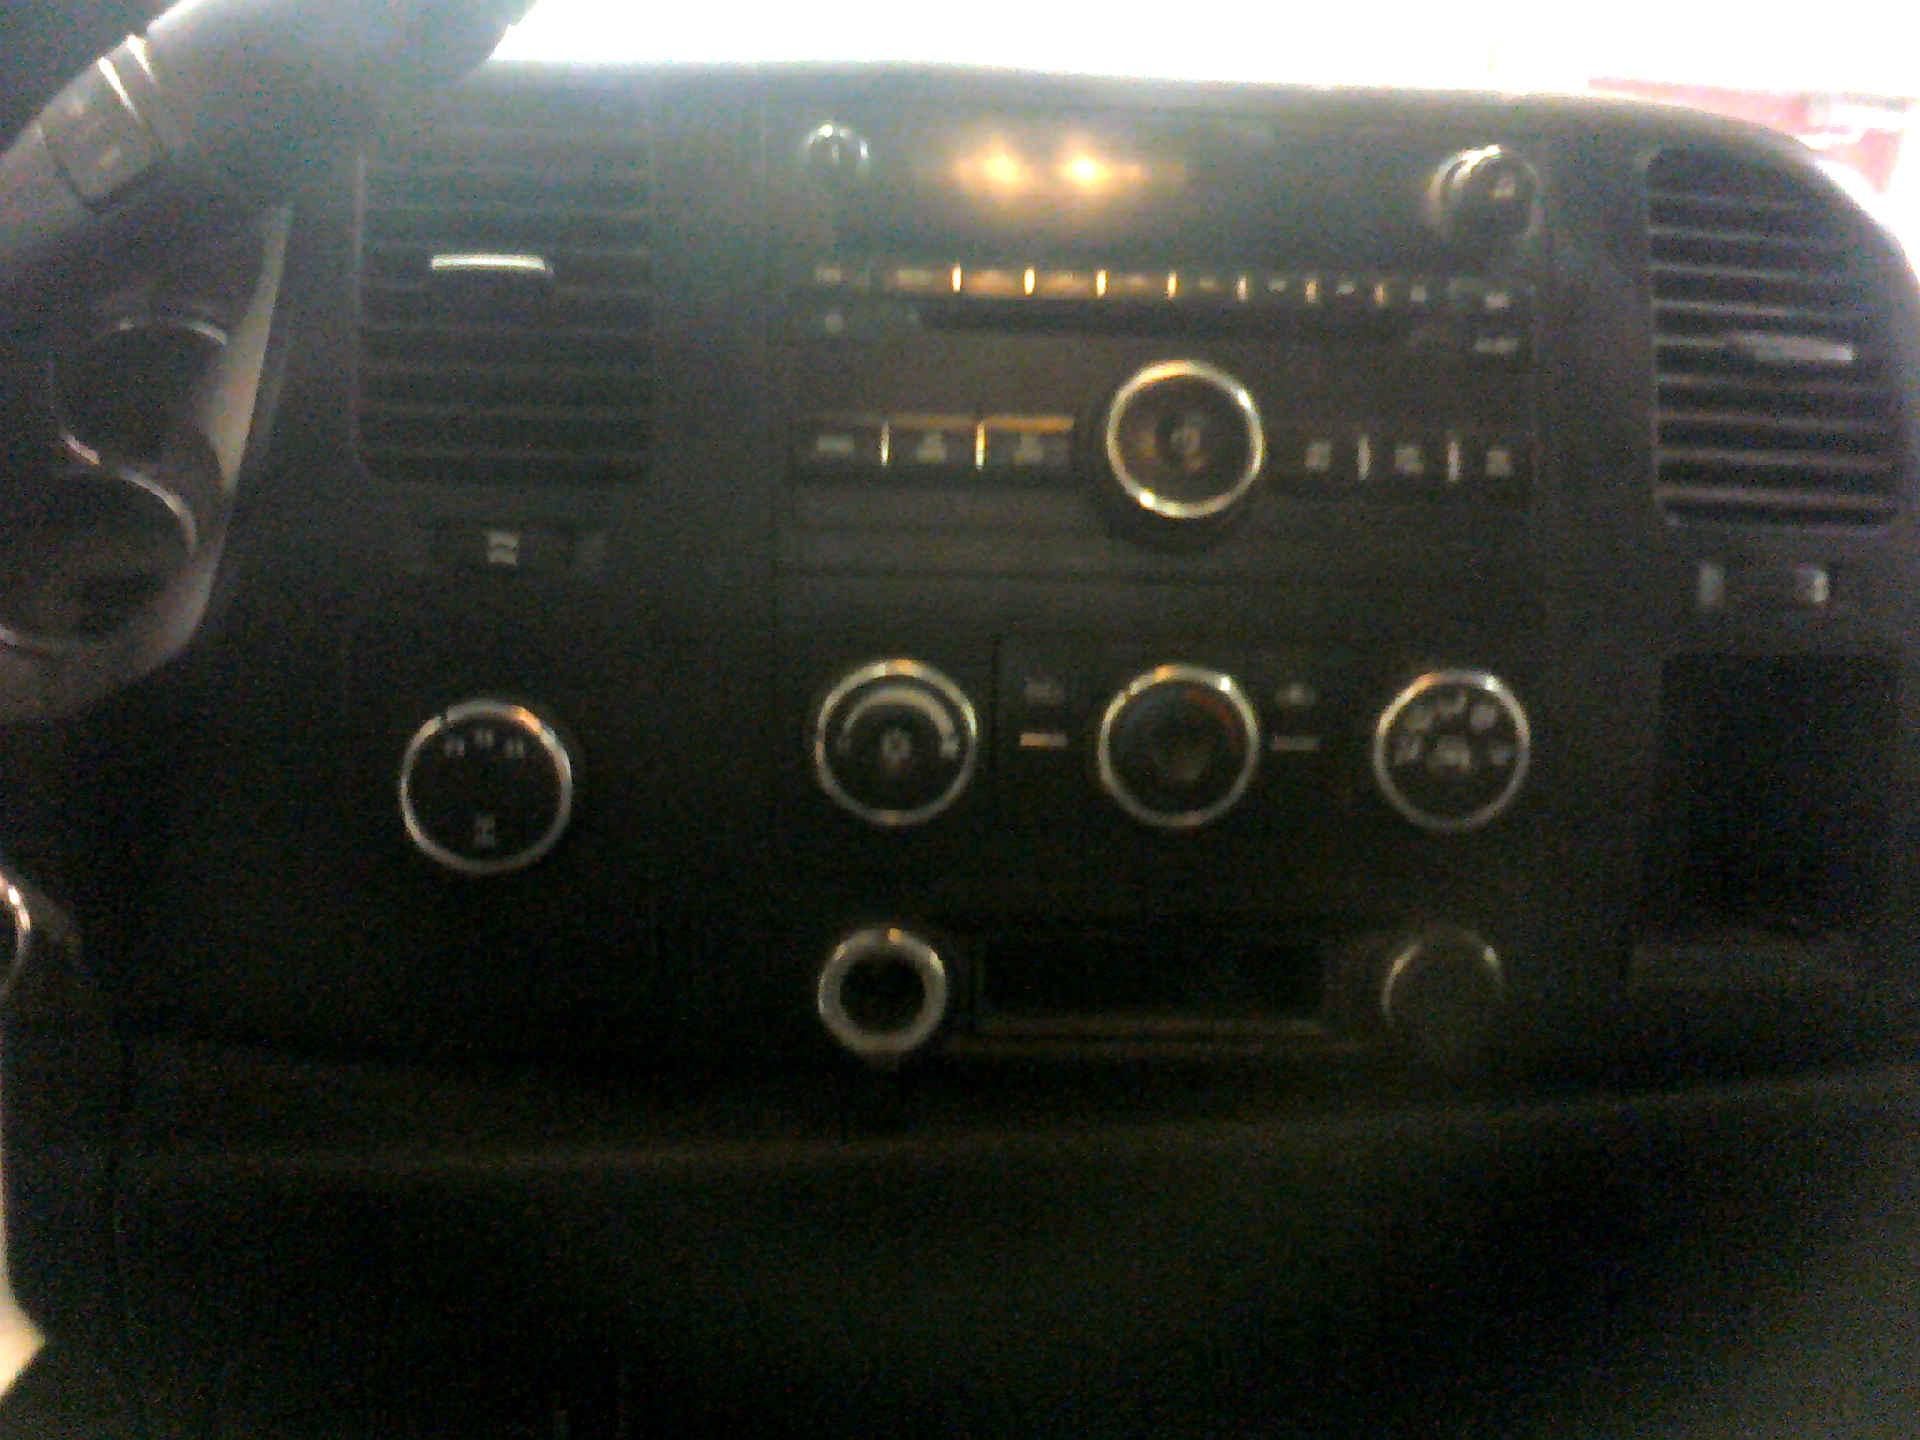 2009 GMC SIERRA 2500HD EXT. CAB LONG BOX 4WD 6.0L V8 16V OHV AUTOMATIC SN:1GTHK49K49E103009 - Image 8 of 8